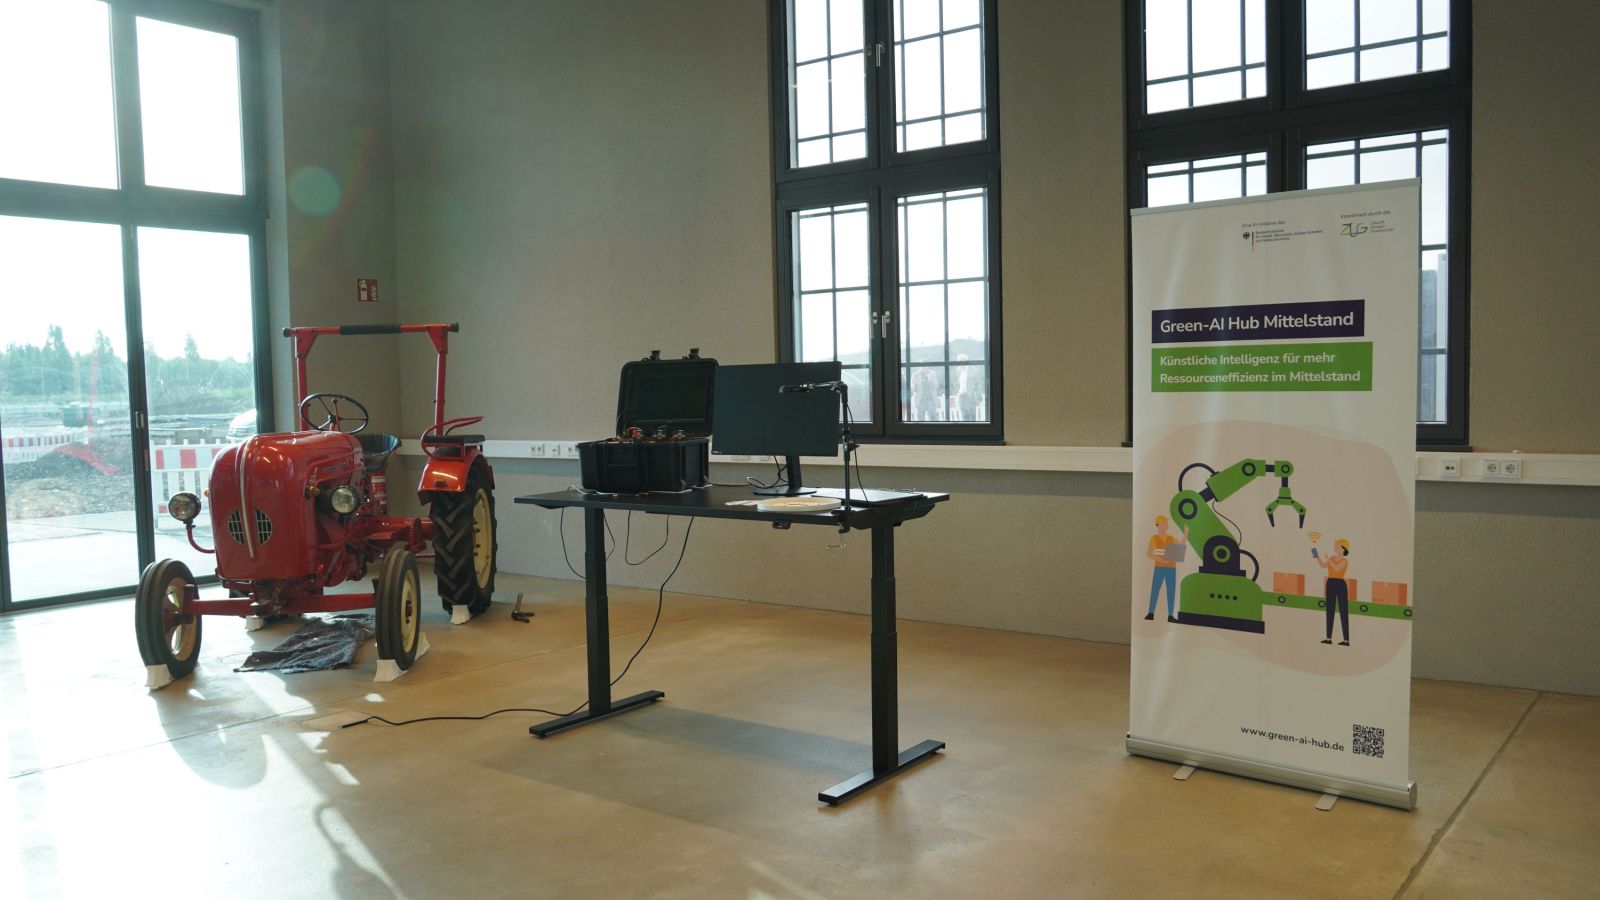 Stand des Green-AI Hub Mittelstand im Ringlokschuppen in Osnabrück